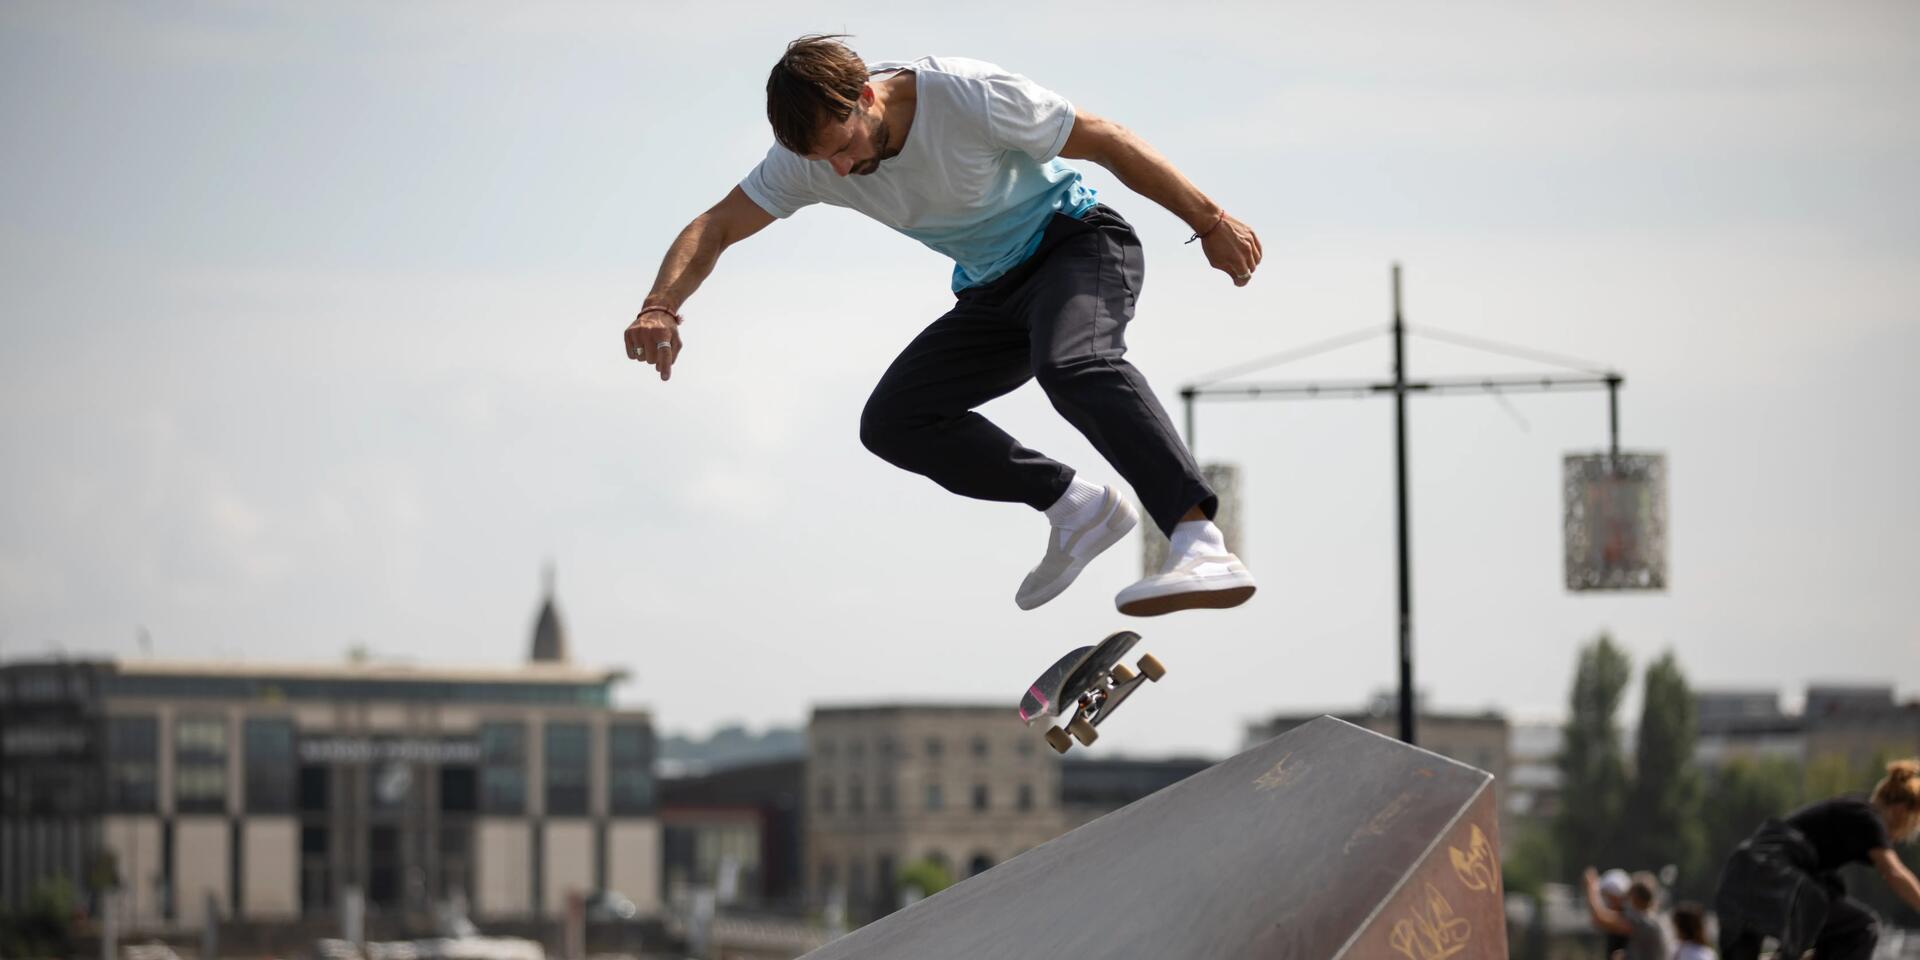 Chłopak skaczący na deskorolce na skateparku